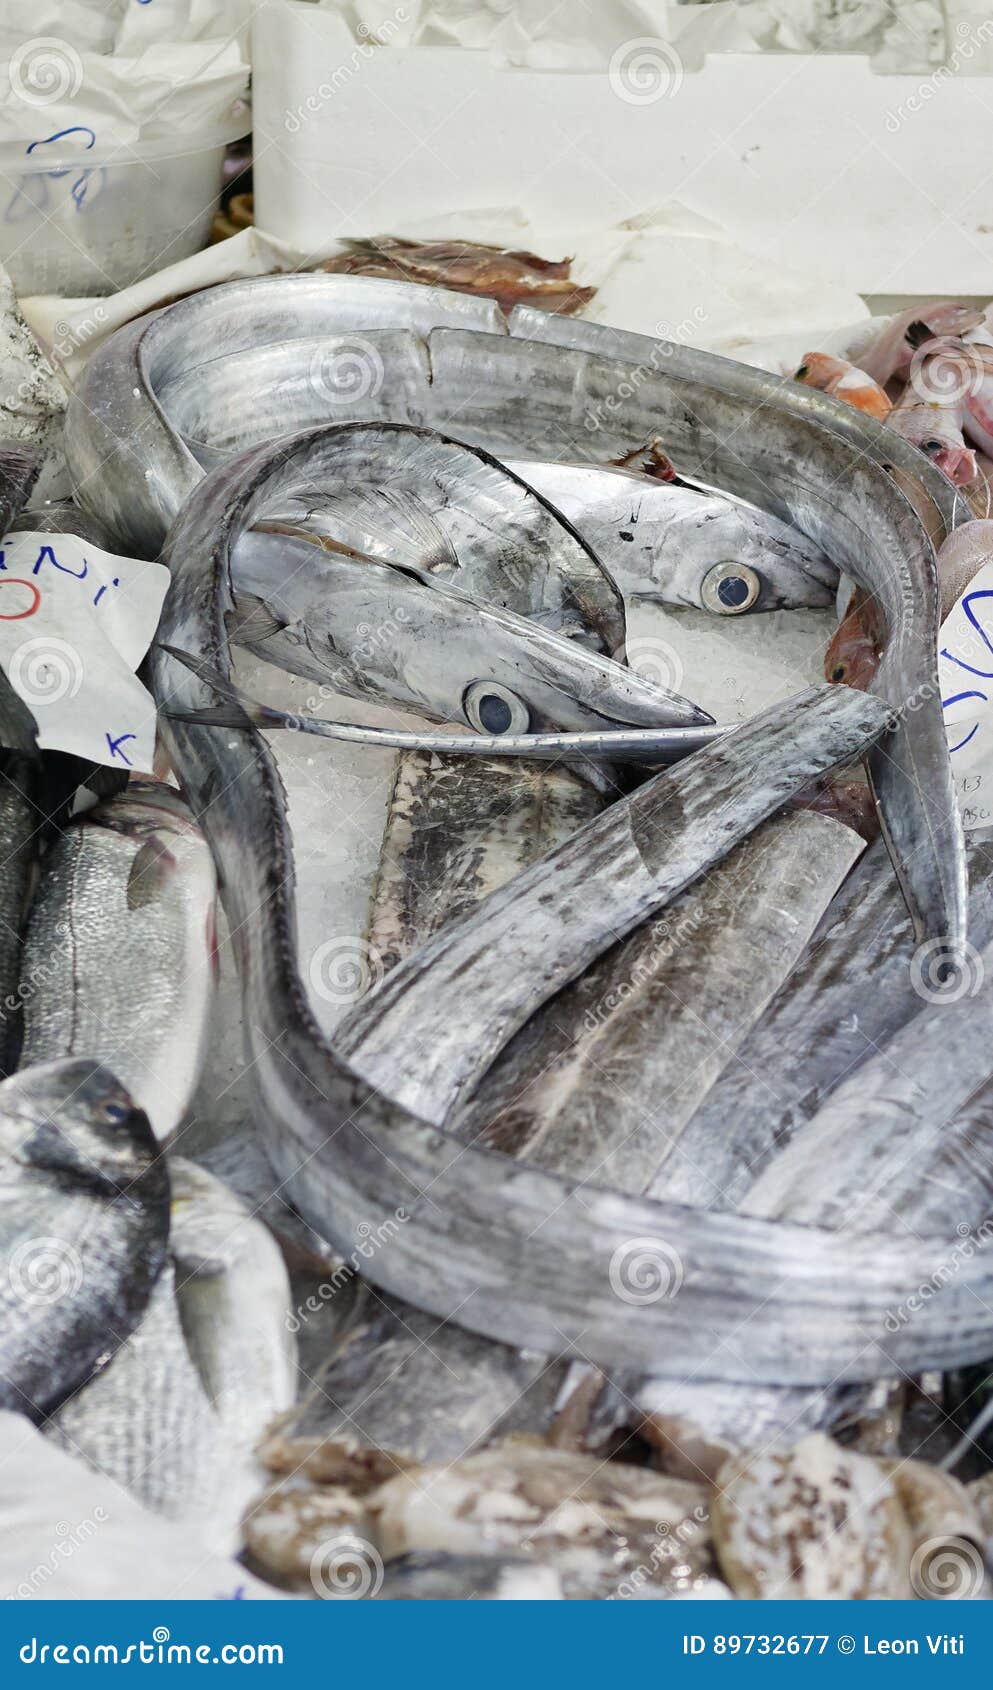 lepidopus caudatus, pesce bandiera in italian, at fish market